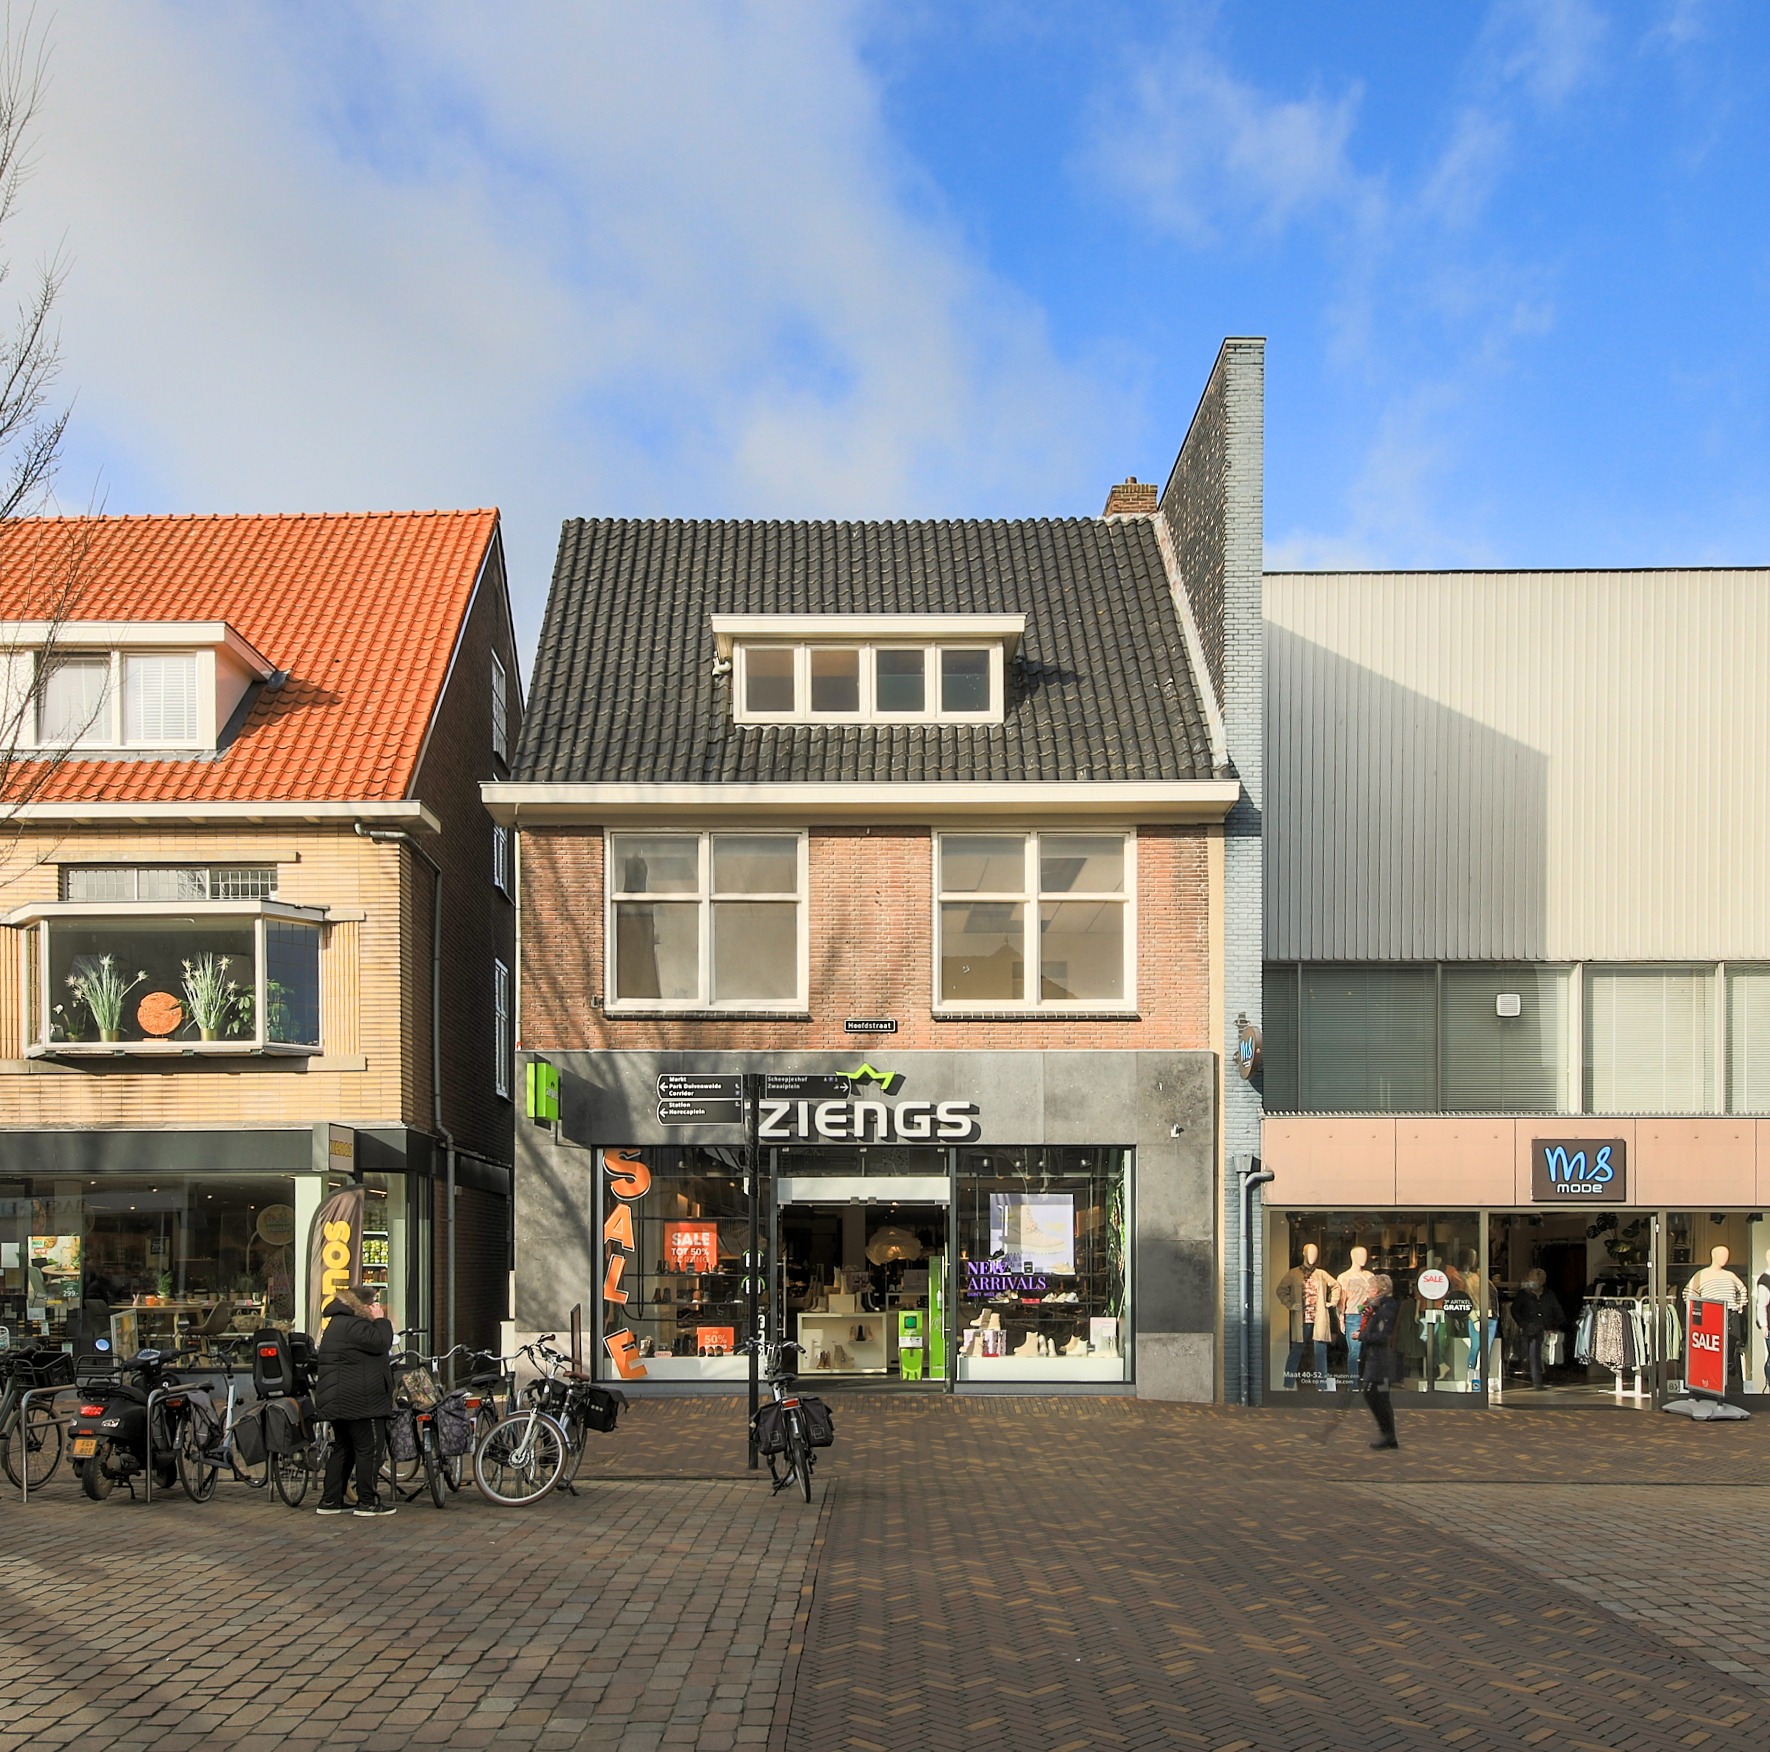 Woning / winkelpand - Veenendaal - Hoofdstraat 79